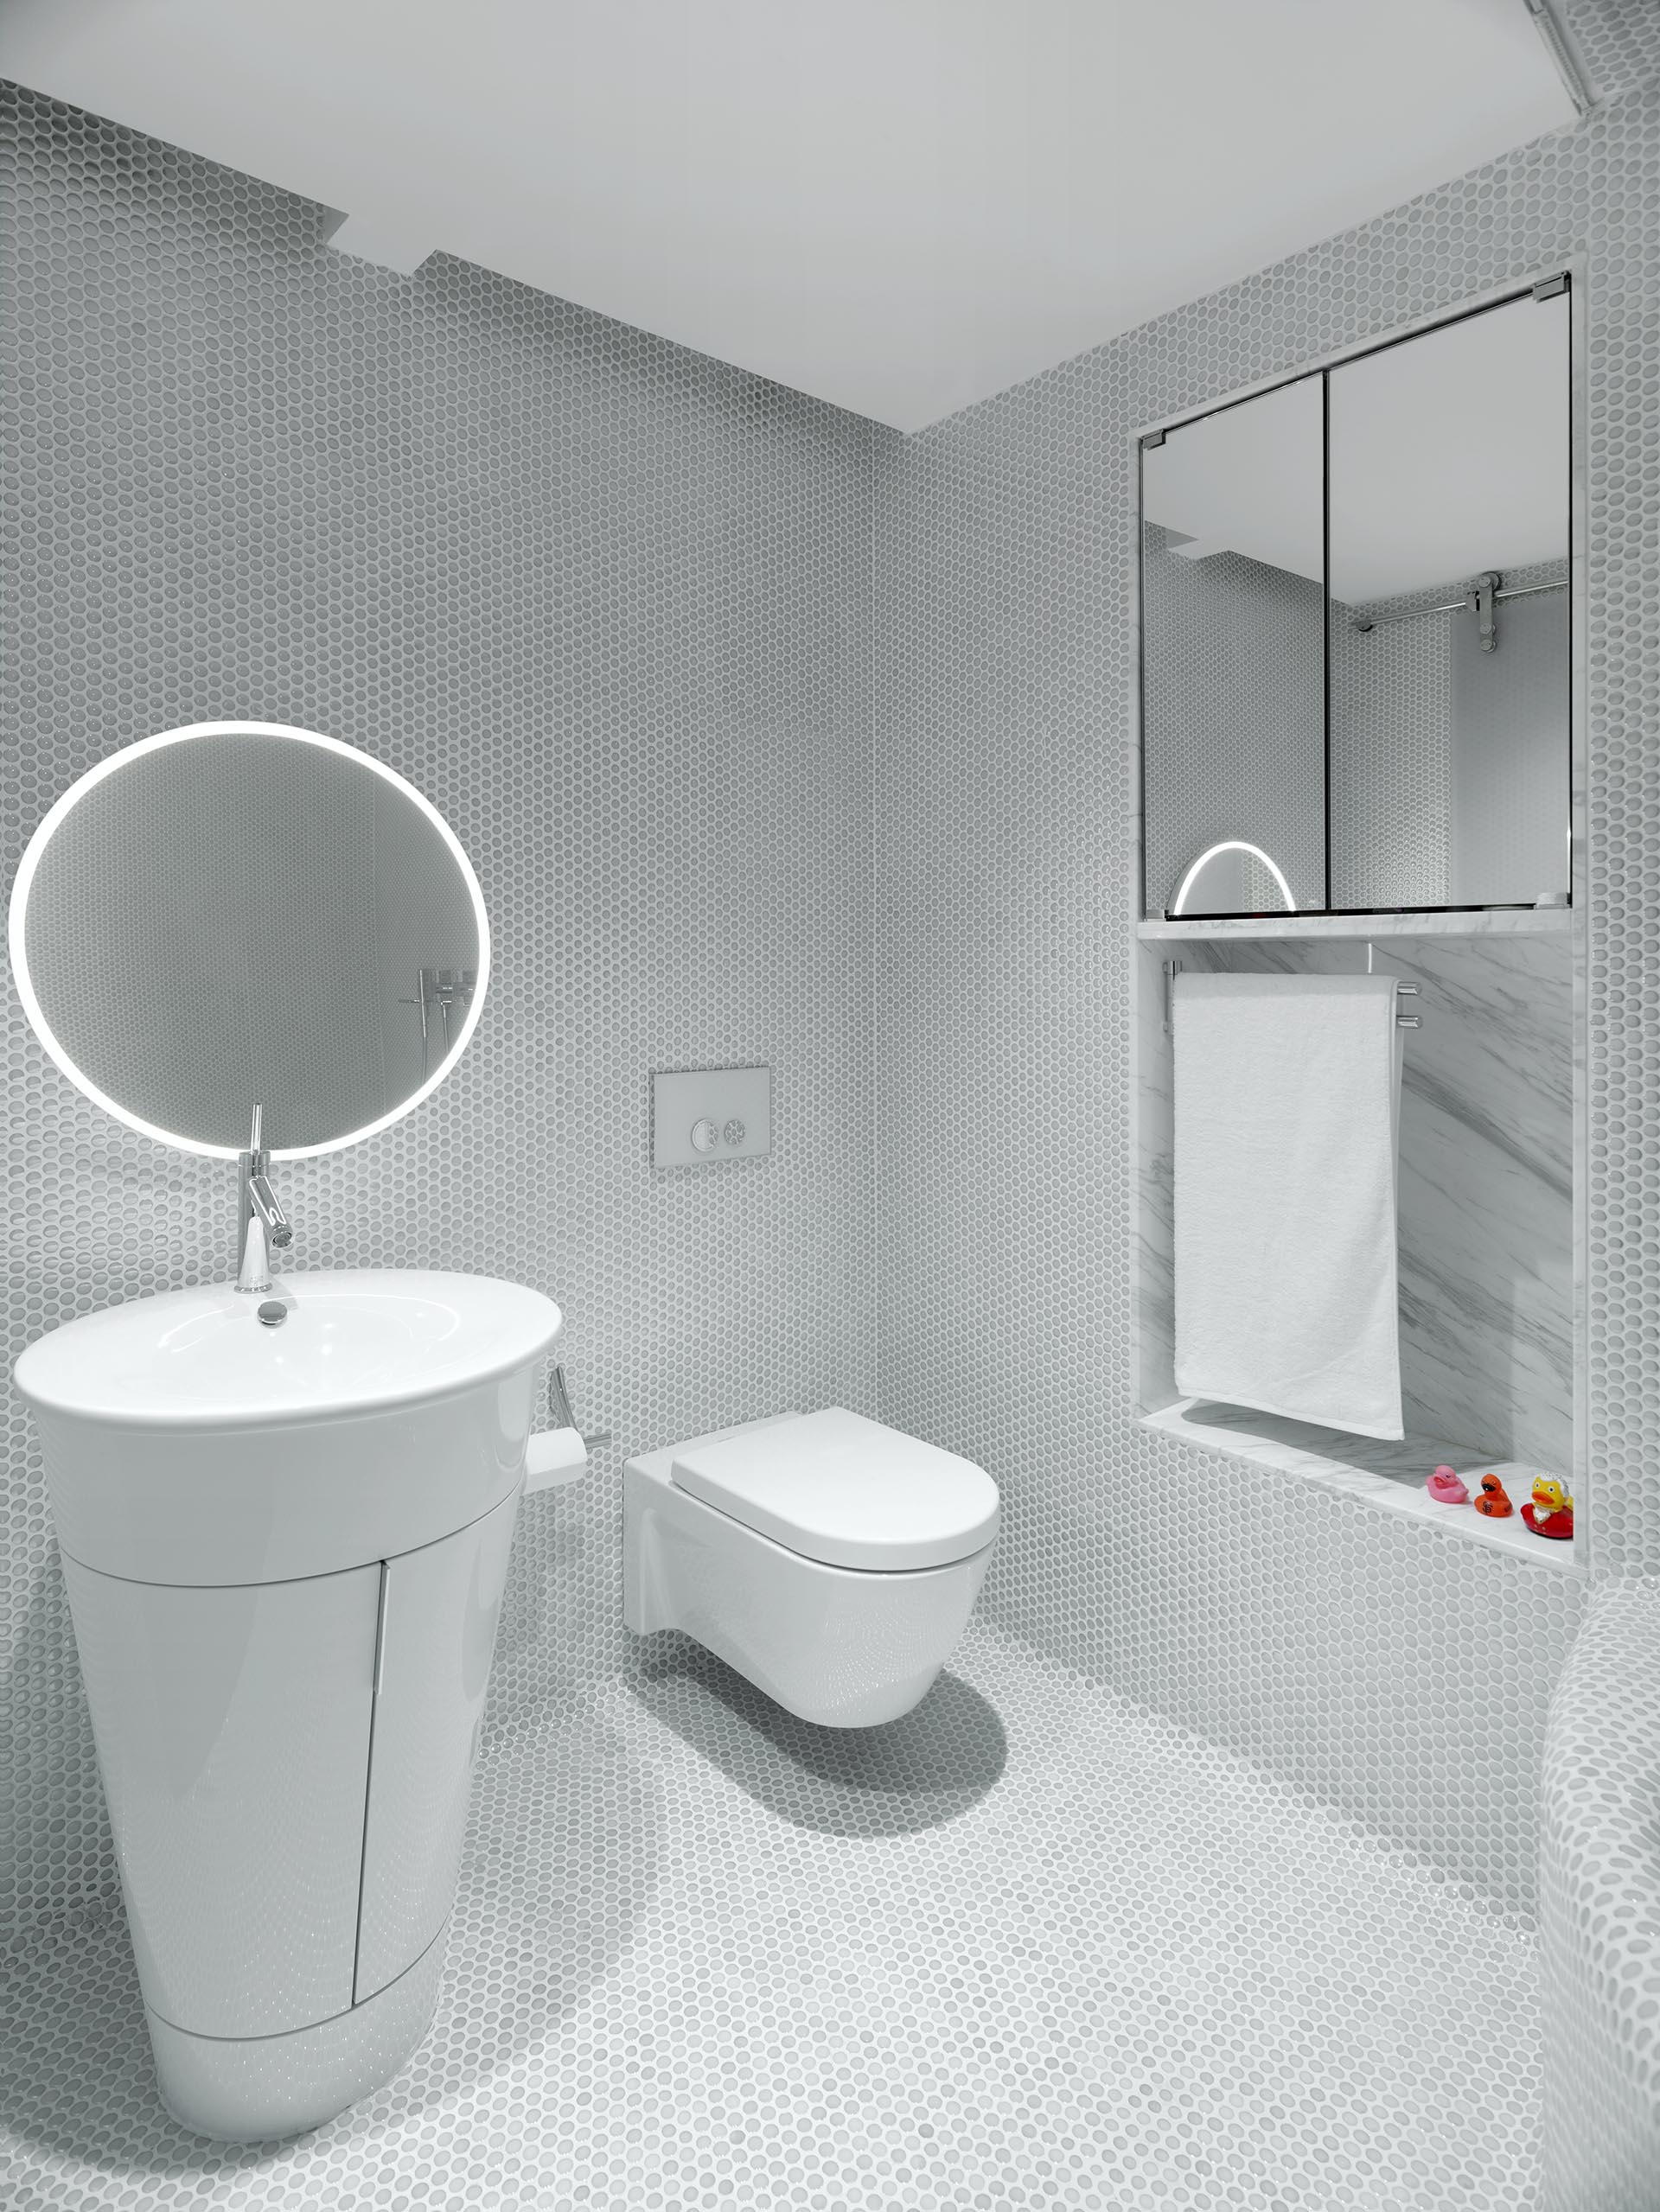 Белая ванная комната, облицованная пенни плиткой, также имеет встроенное зеркало и нишу для стеллажей.